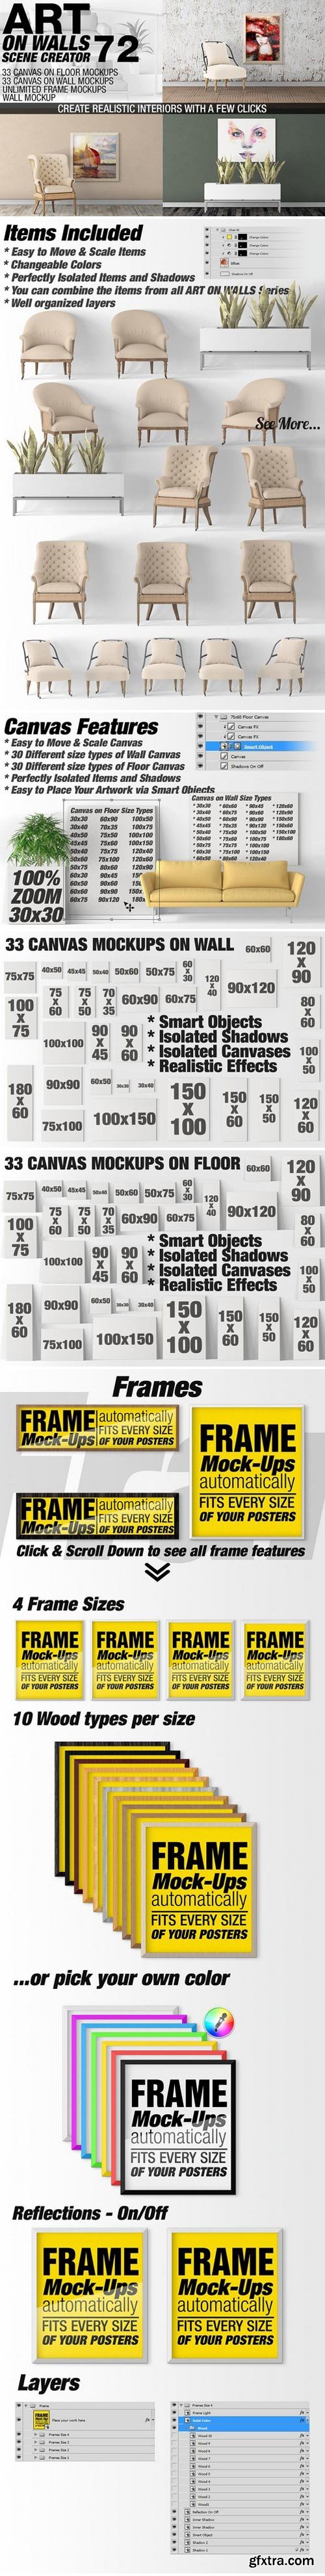 CM - Canvas Mockups - Frames Mockups v 72 1519614